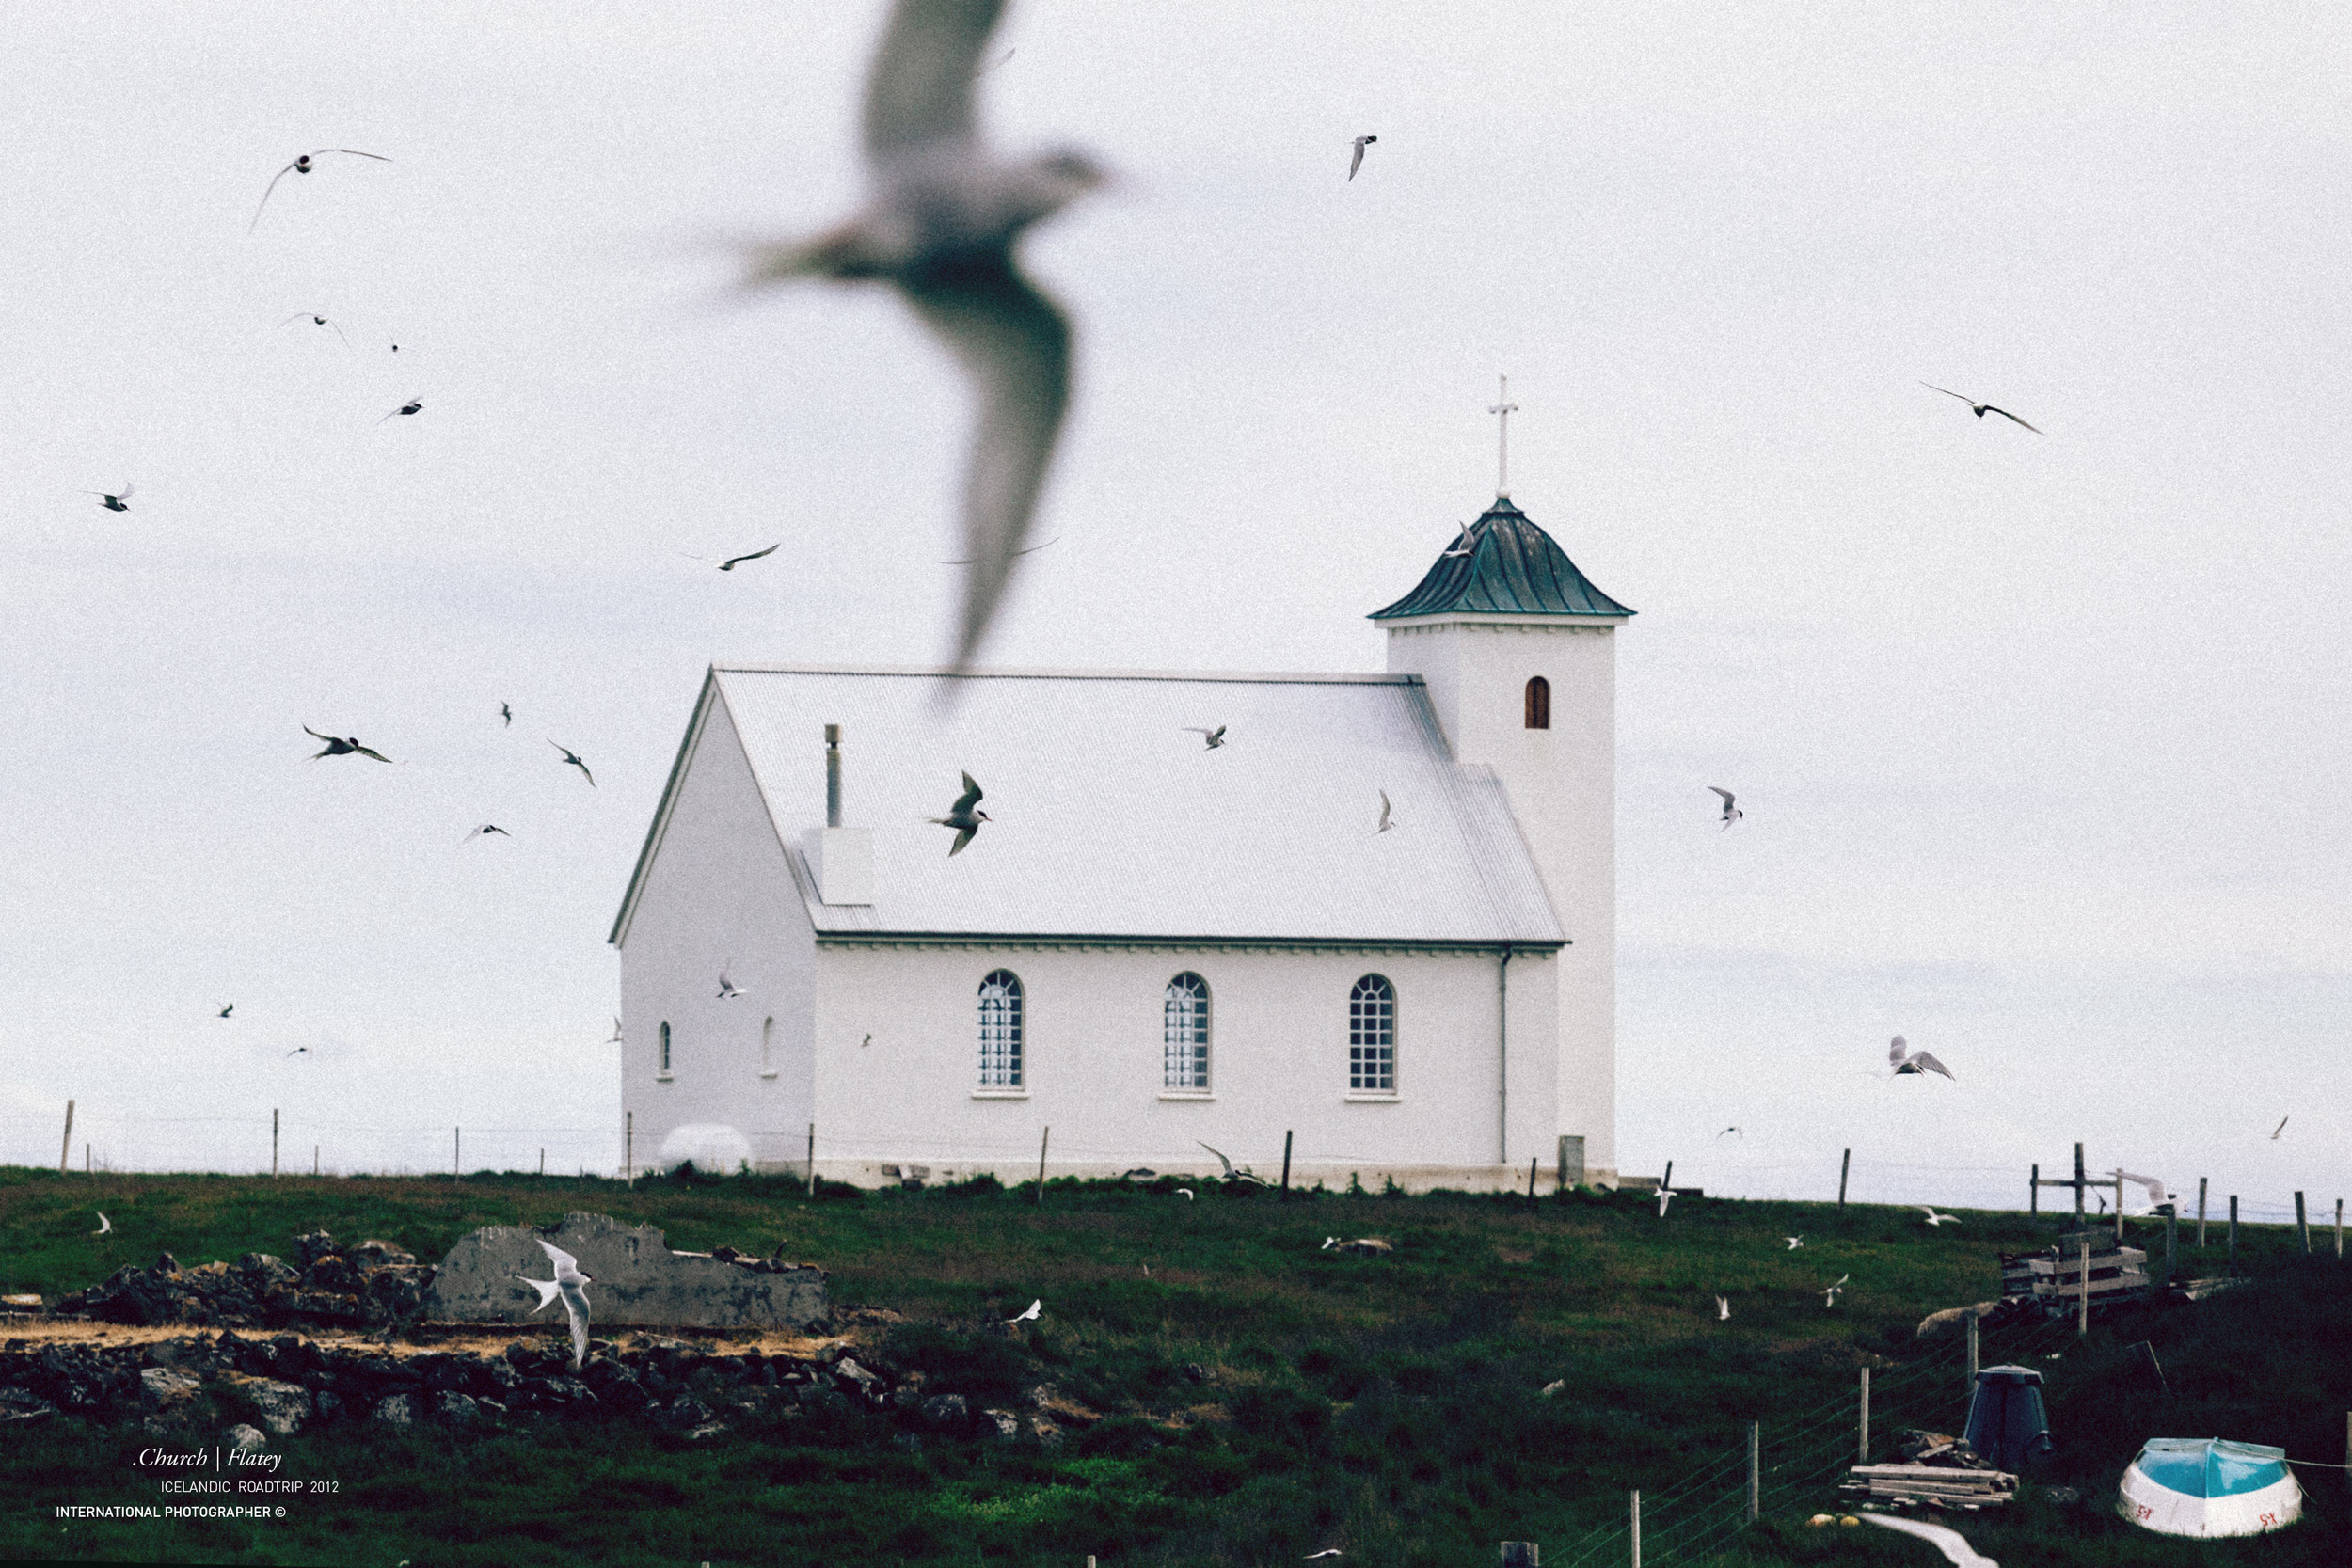 2012 ICELAND Flatey church